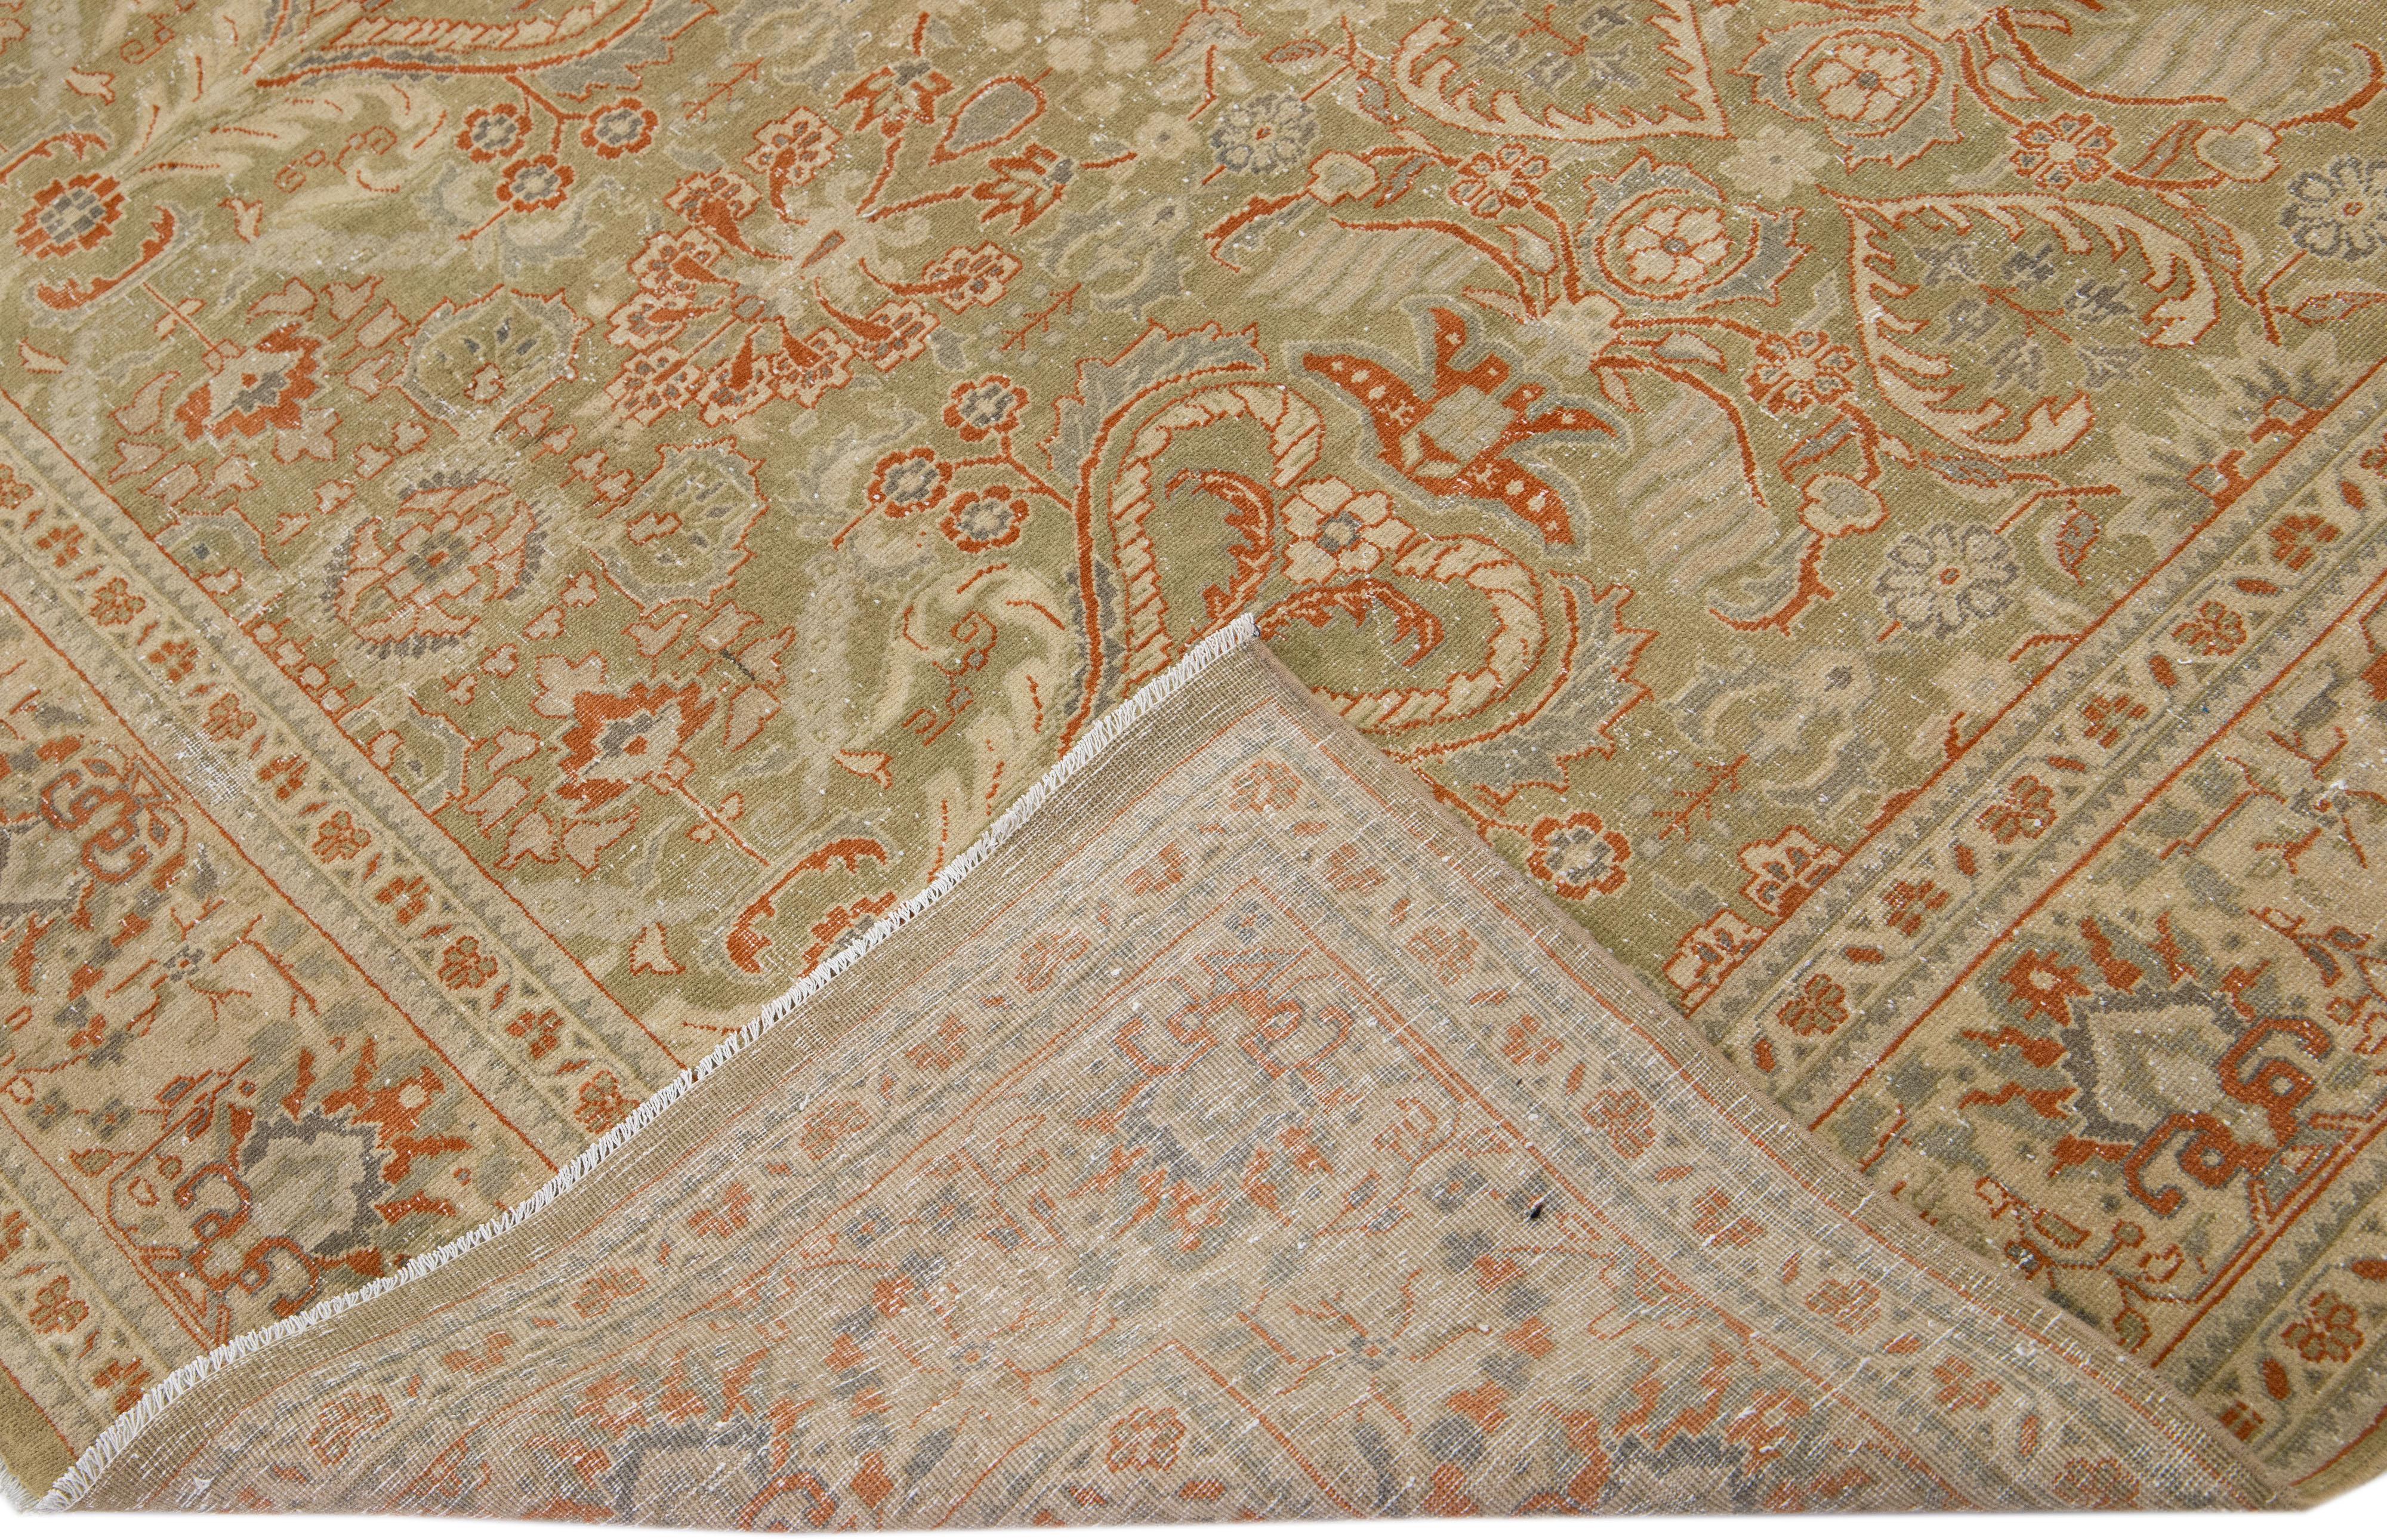 Schöner antiker Mahal handgeknüpfter Wollteppich mit einem grünen Farbfeld. Dieser Perserteppich hat orange, beige und graue Akzente in einem floralen Allover-Muster.

Dieser Teppich misst 7' x 7'.